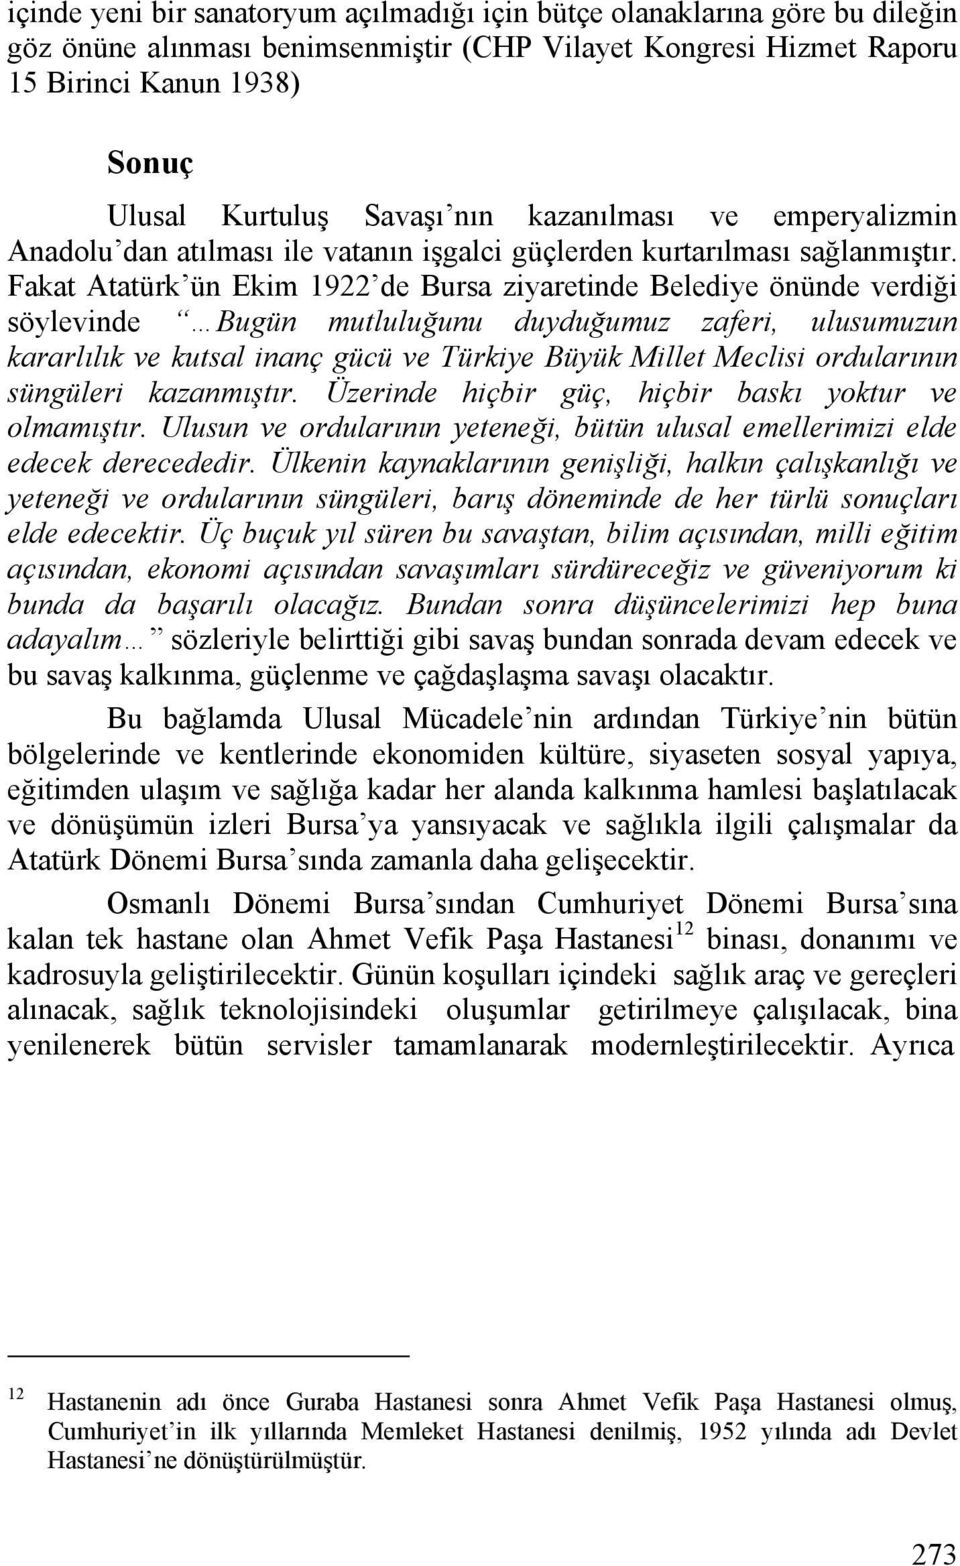 Fakat Atatürk ün Ekim 1922 de Bursa ziyaretinde Belediye önünde verdiği söylevinde Bugün mutluluğunu duyduğumuz zaferi, ulusumuzun kararlılık ve kutsal inanç gücü ve Türkiye Büyük Millet Meclisi